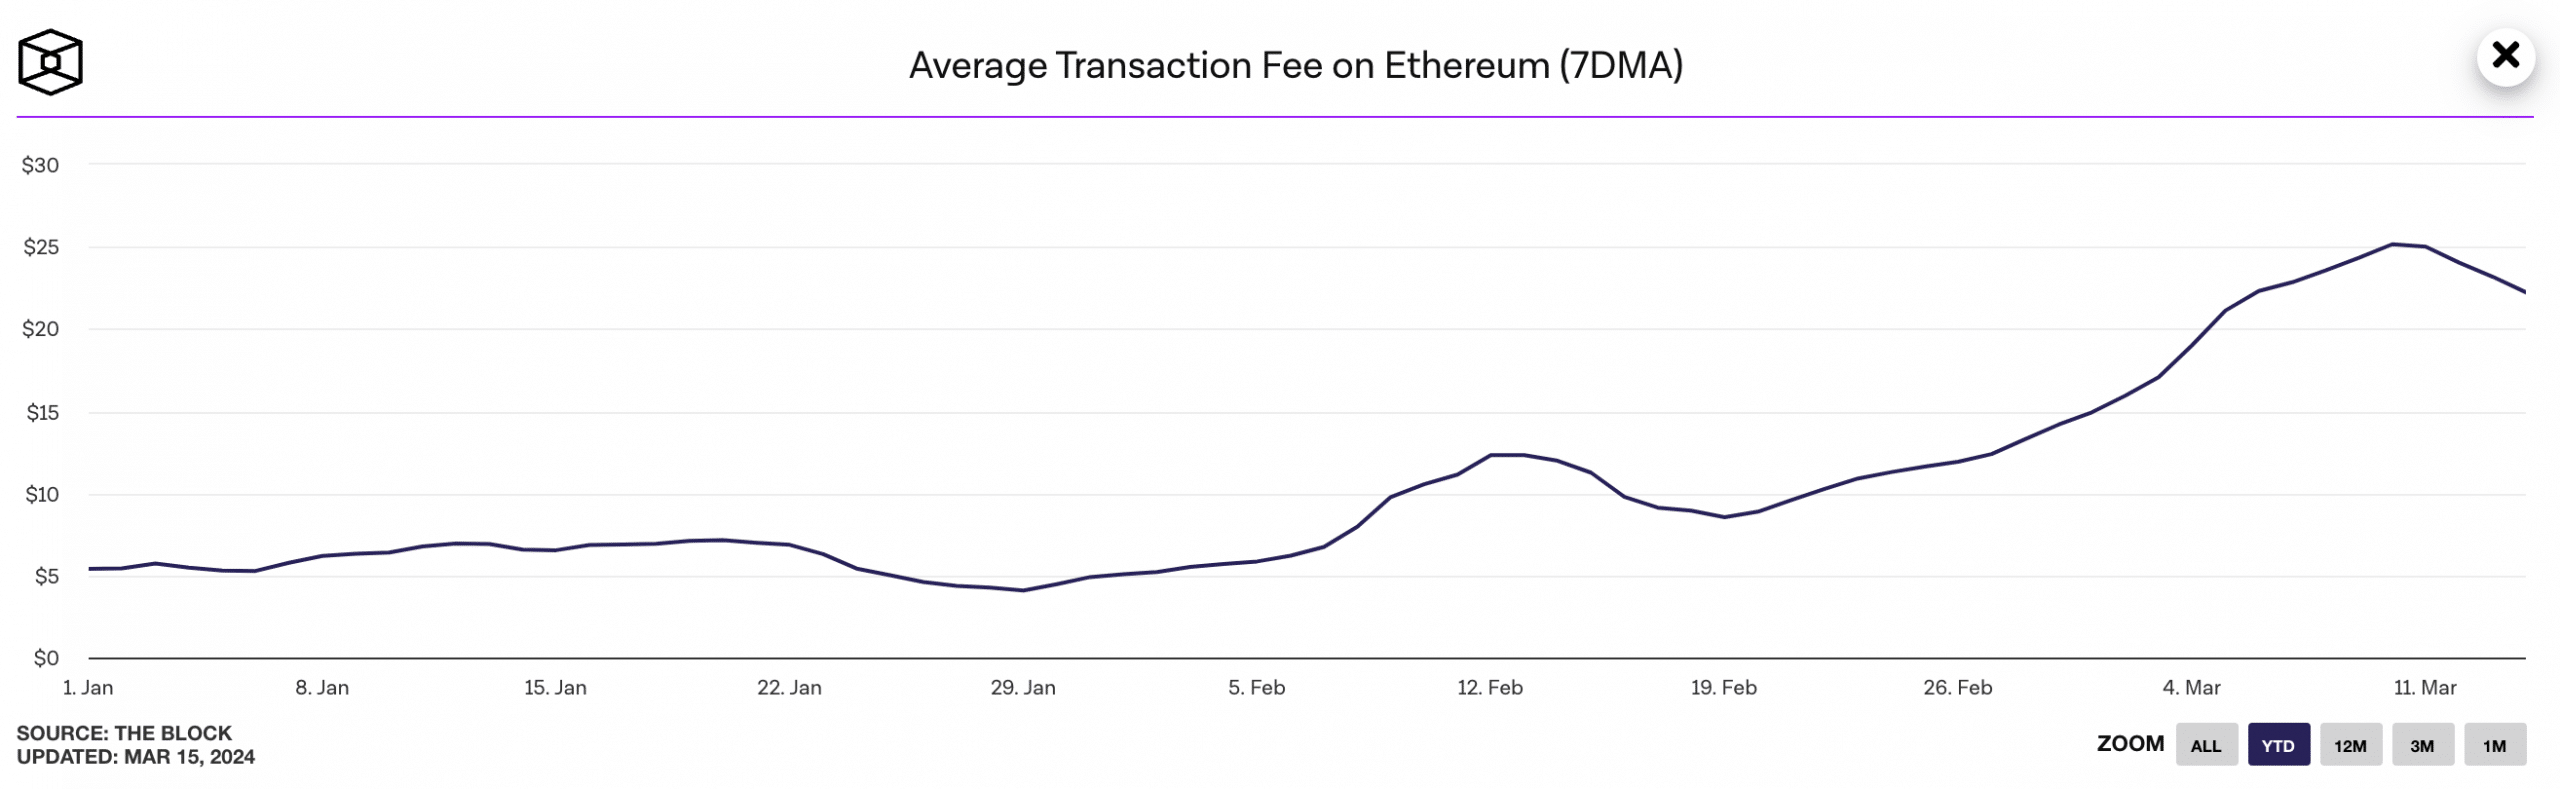 Average Transaction Fee